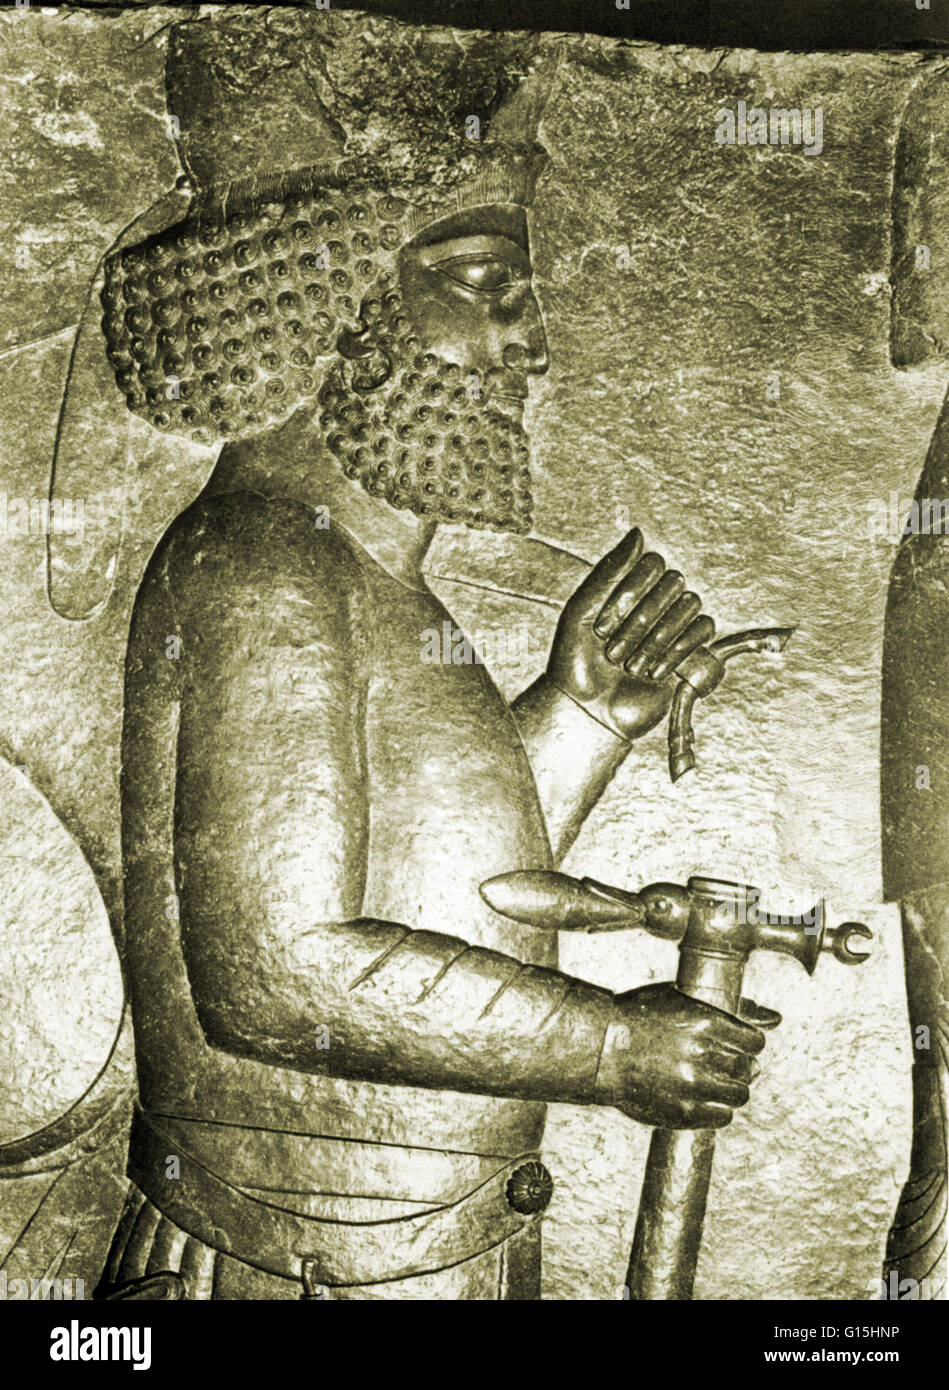 Das Royal Empfang Relief aus der alten persischen Hauptstadt Persepolis, Iran, ca. 500 v. Chr.. Der Träger der königlichen Waffen, Streitaxt und Bogen Fall. Stockfoto